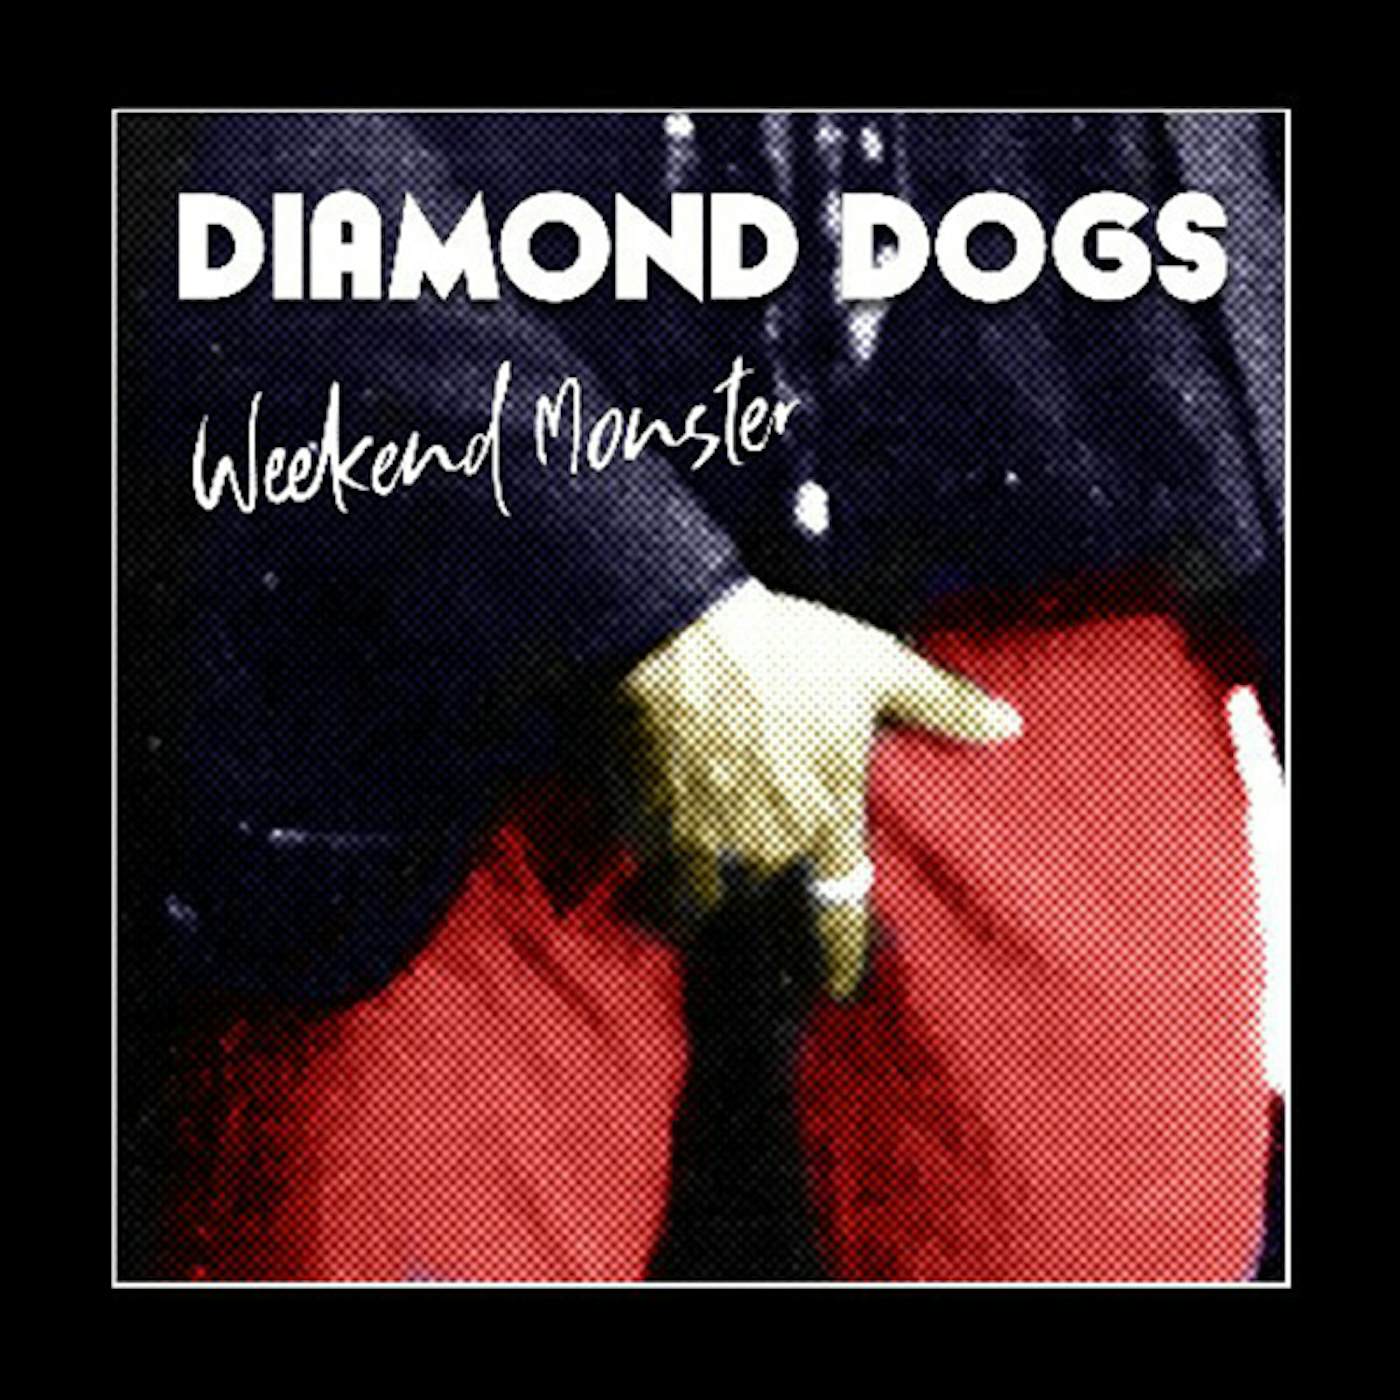 Frontier mirakel Give Diamond Dogs LP - Weekend Monster (Vinyl)